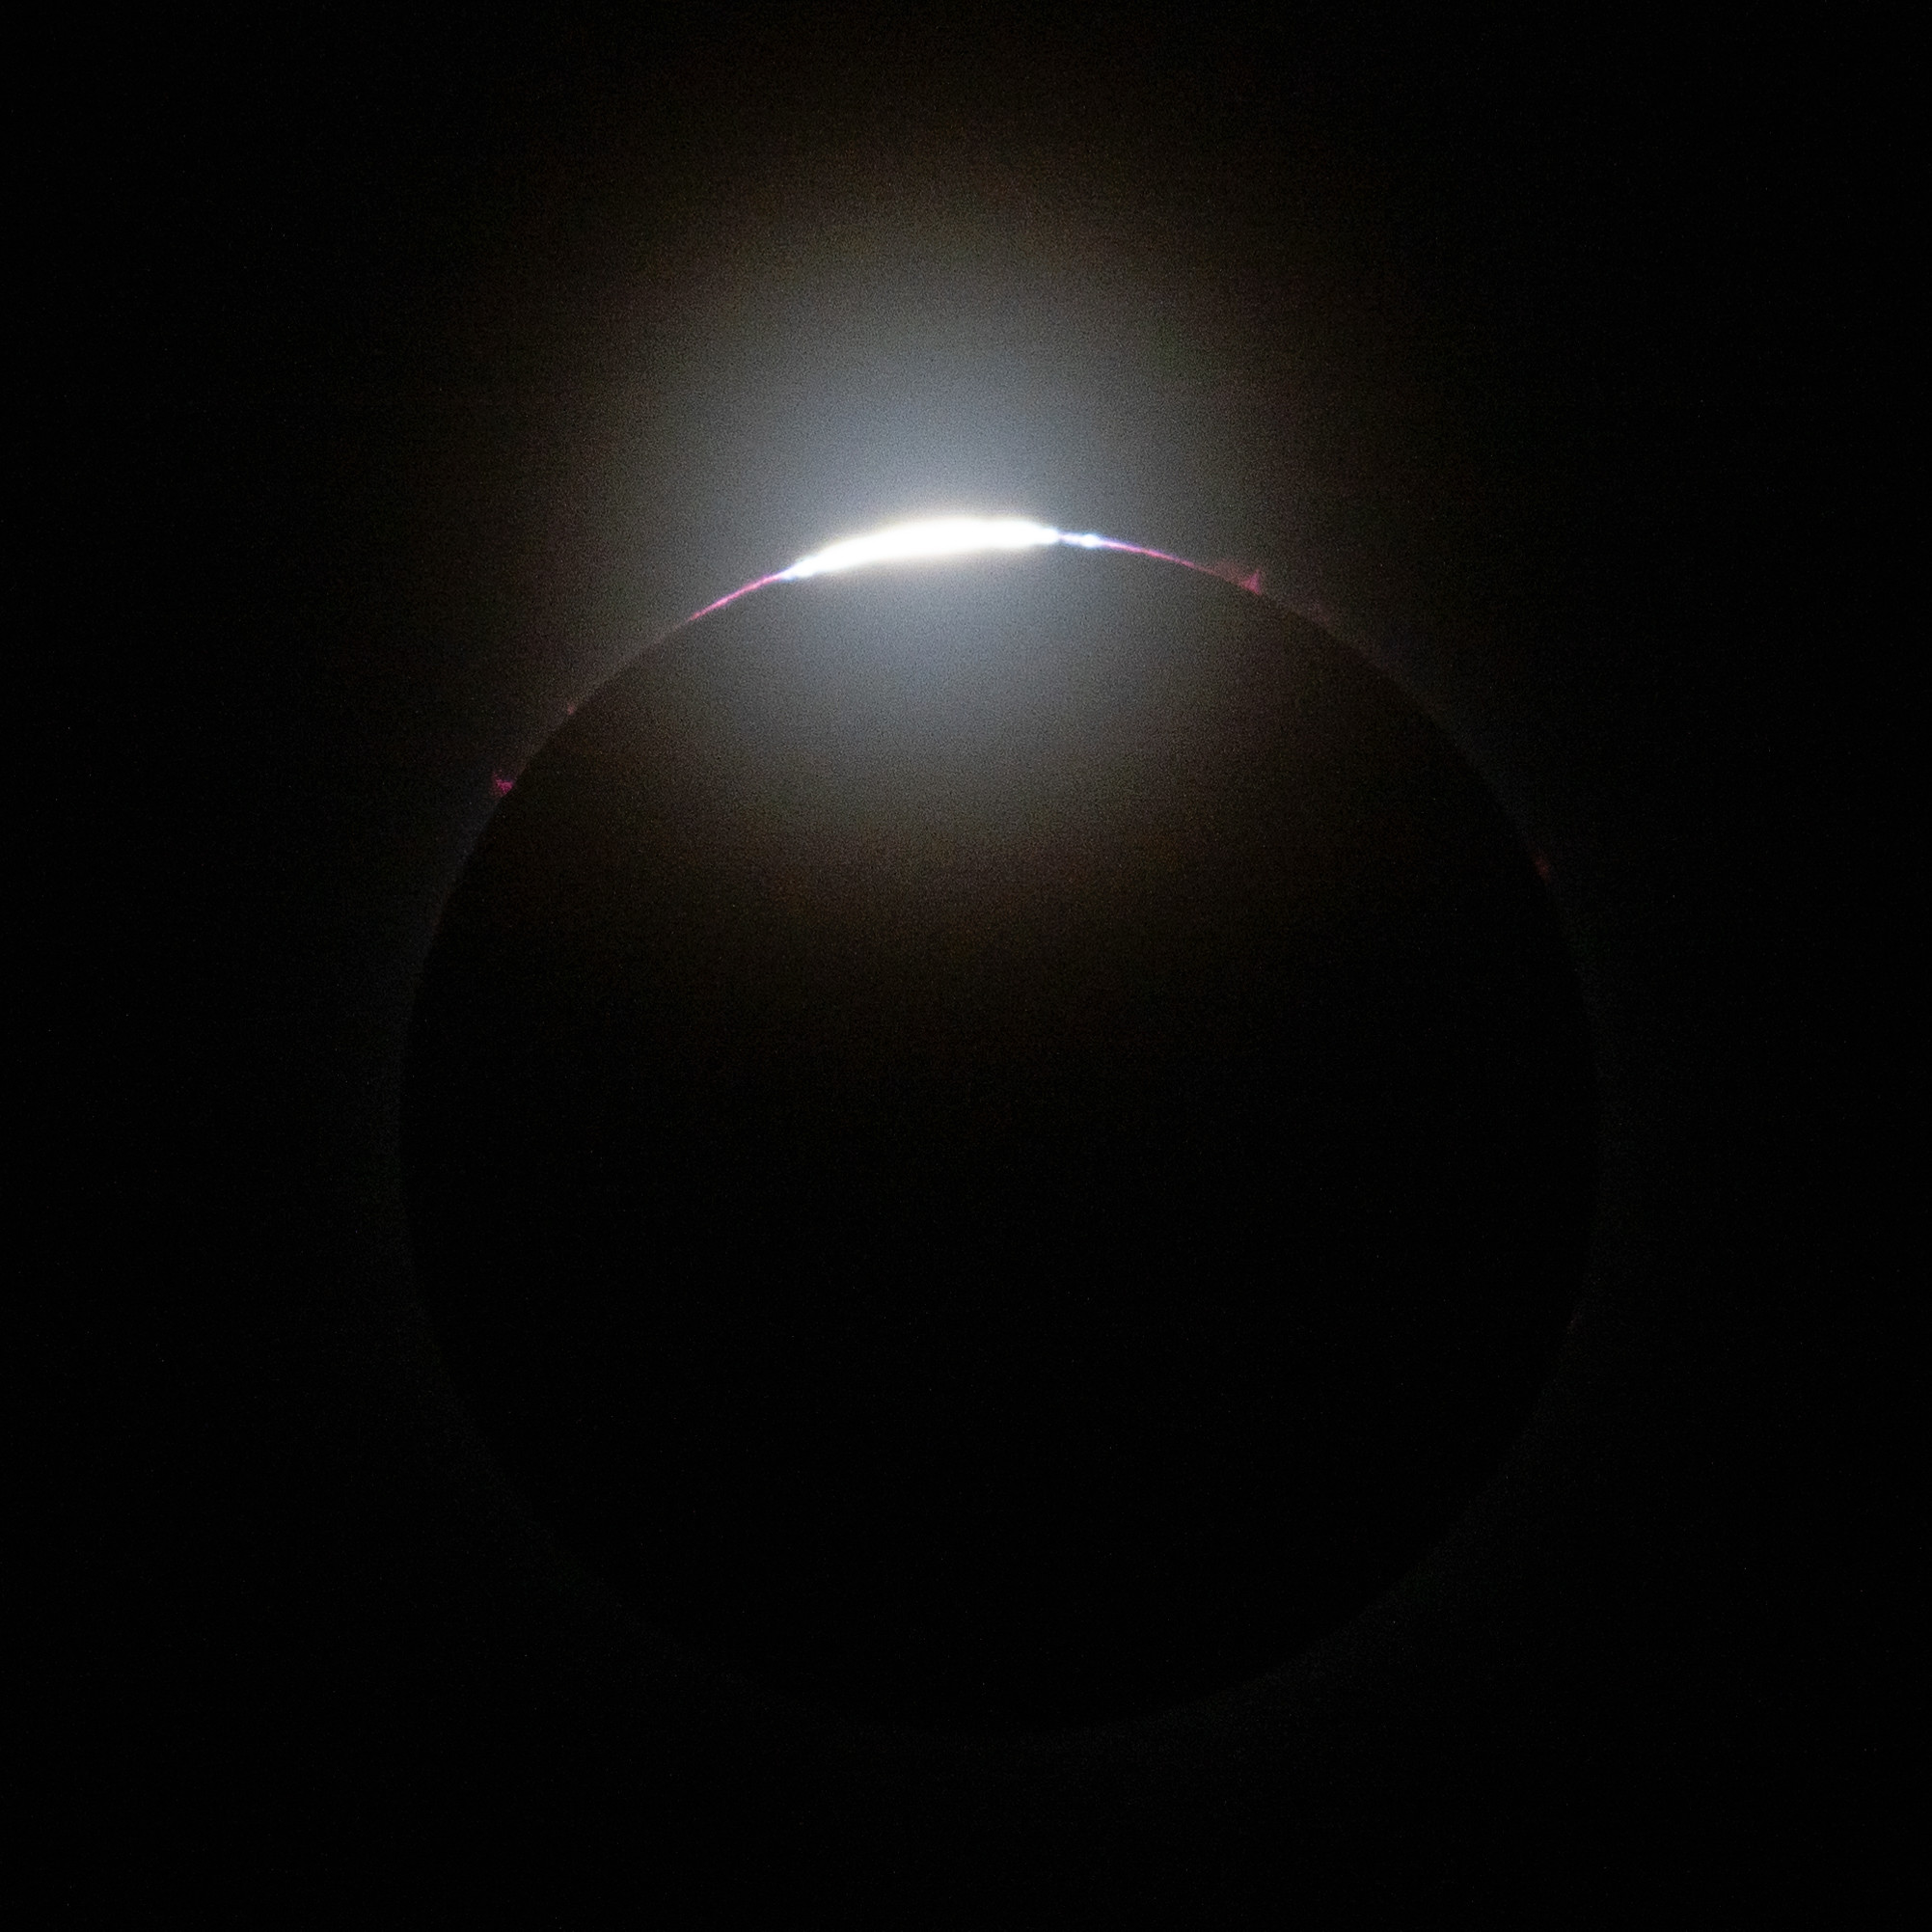 Los últimos rayos del sol se asoman a través de las montañas de la luna en esta imagen del eclipse solar total del 8 de abril.